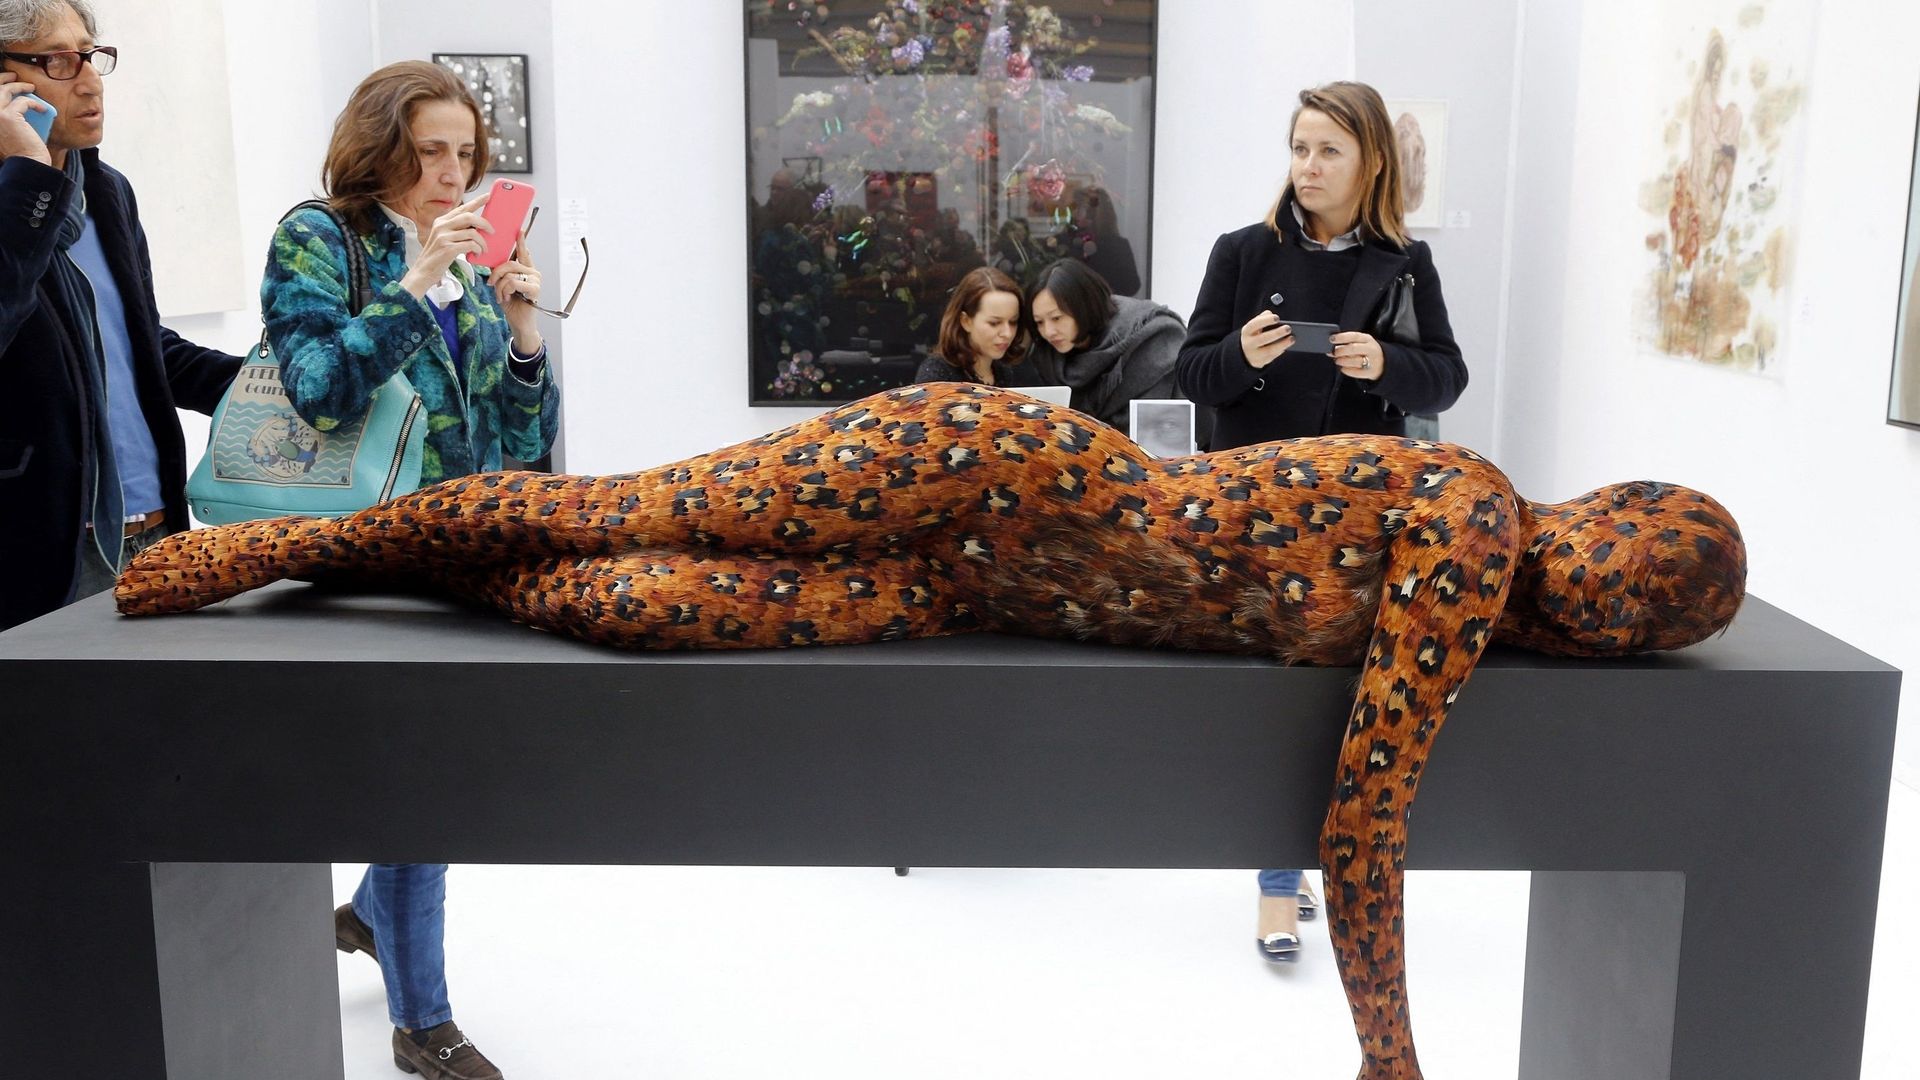 La foire d’art contemporain "Art Paris" se tient jusqu’à dimanche au Grand Palais éphémère